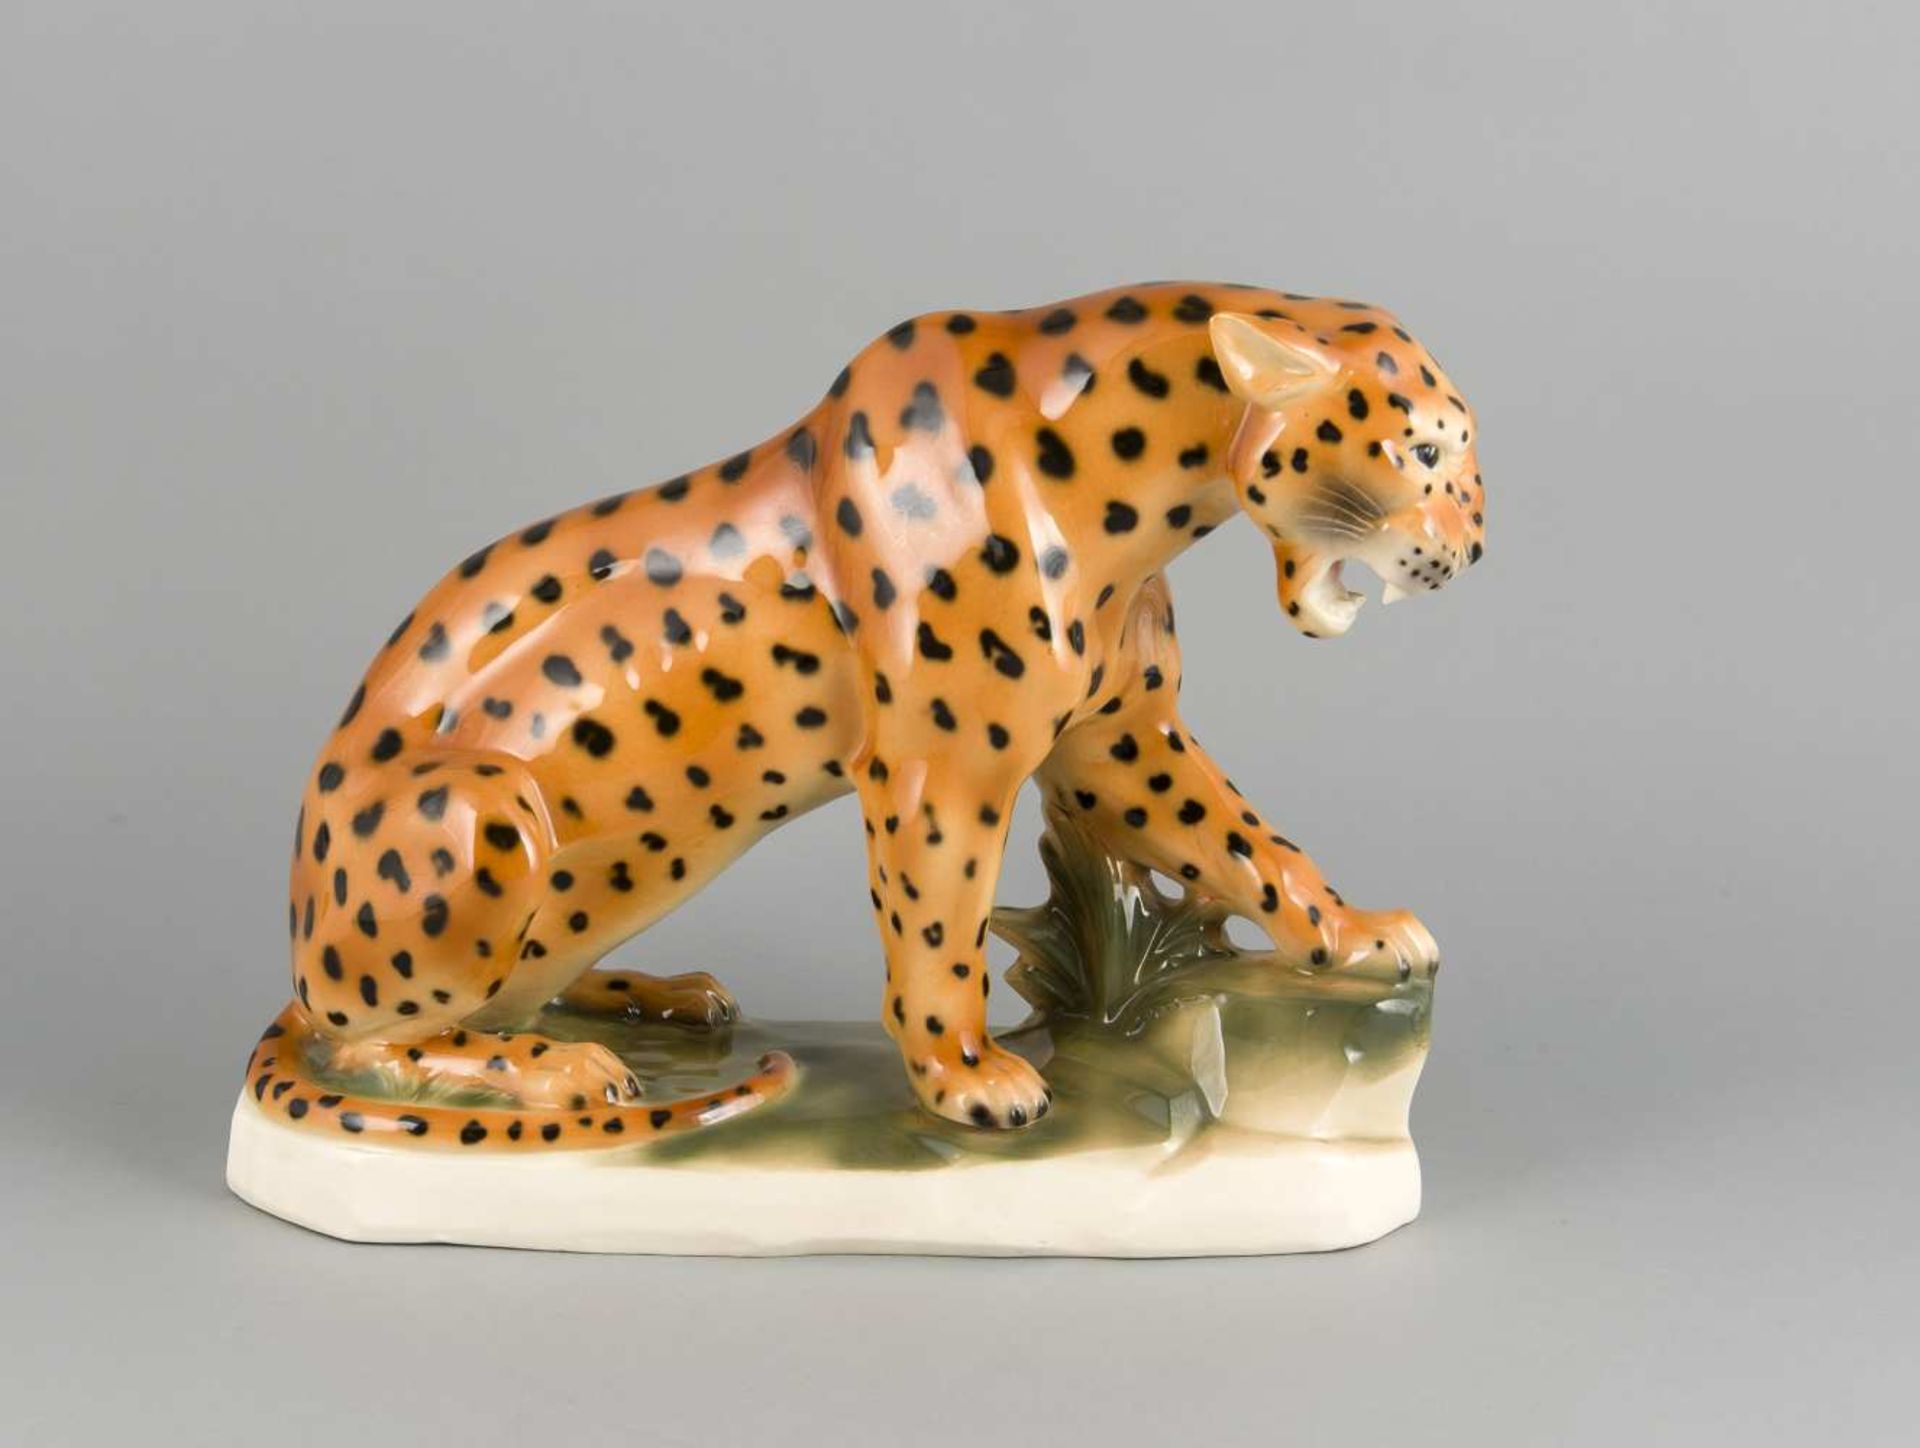 Sitzender Leopard, Sitzendorf, Thüringen, 20 Jh., Keramik, polychrom staffiert innaturalistischen